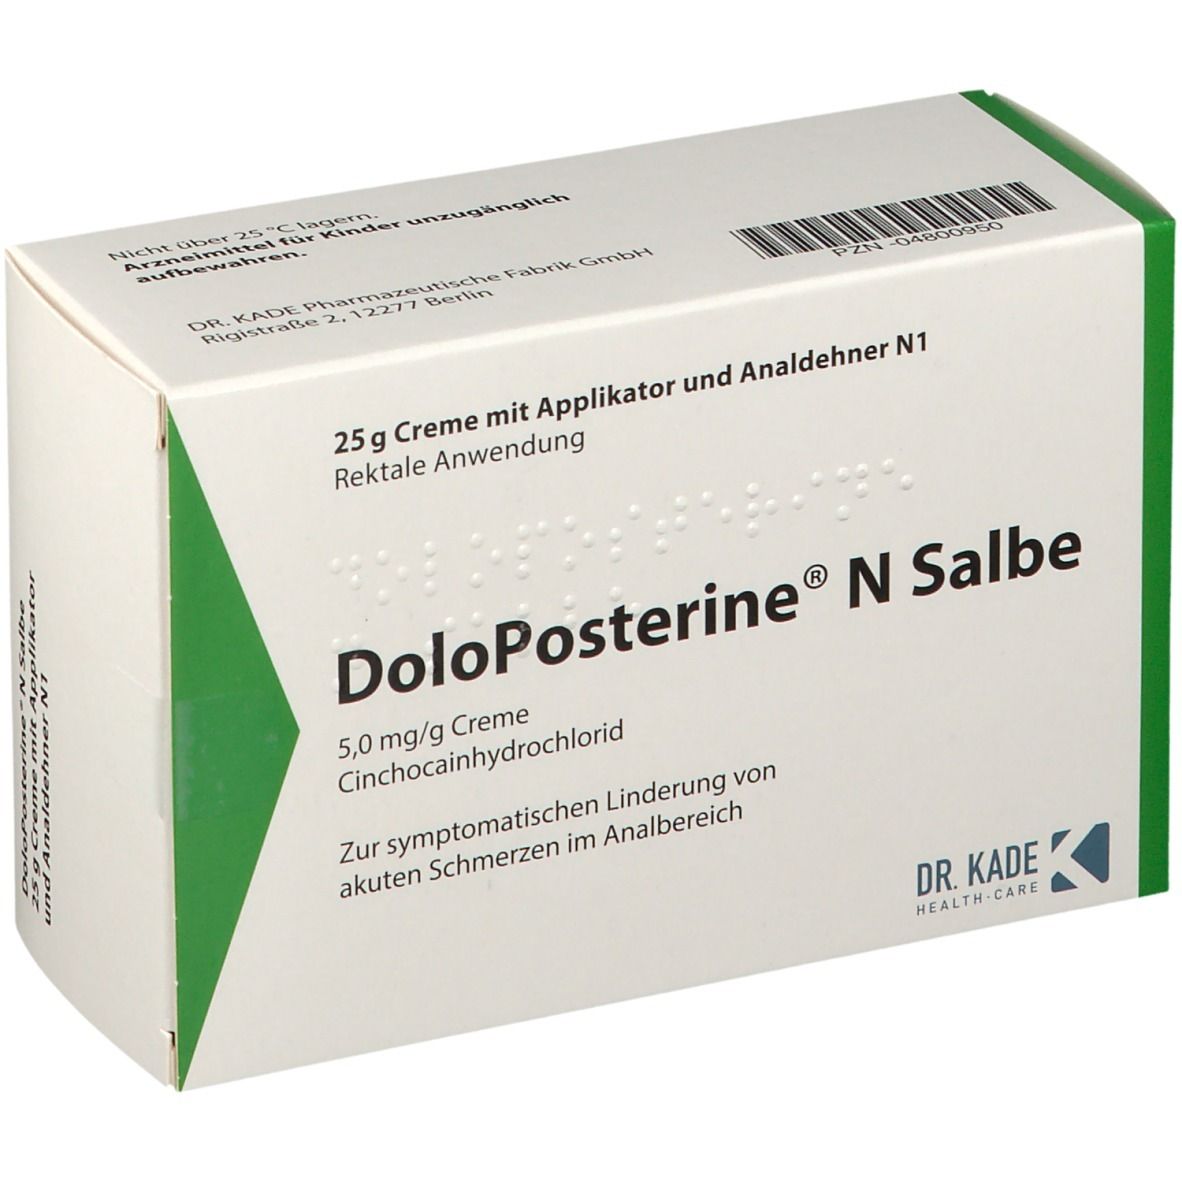 DoloPosterine® N Salbe